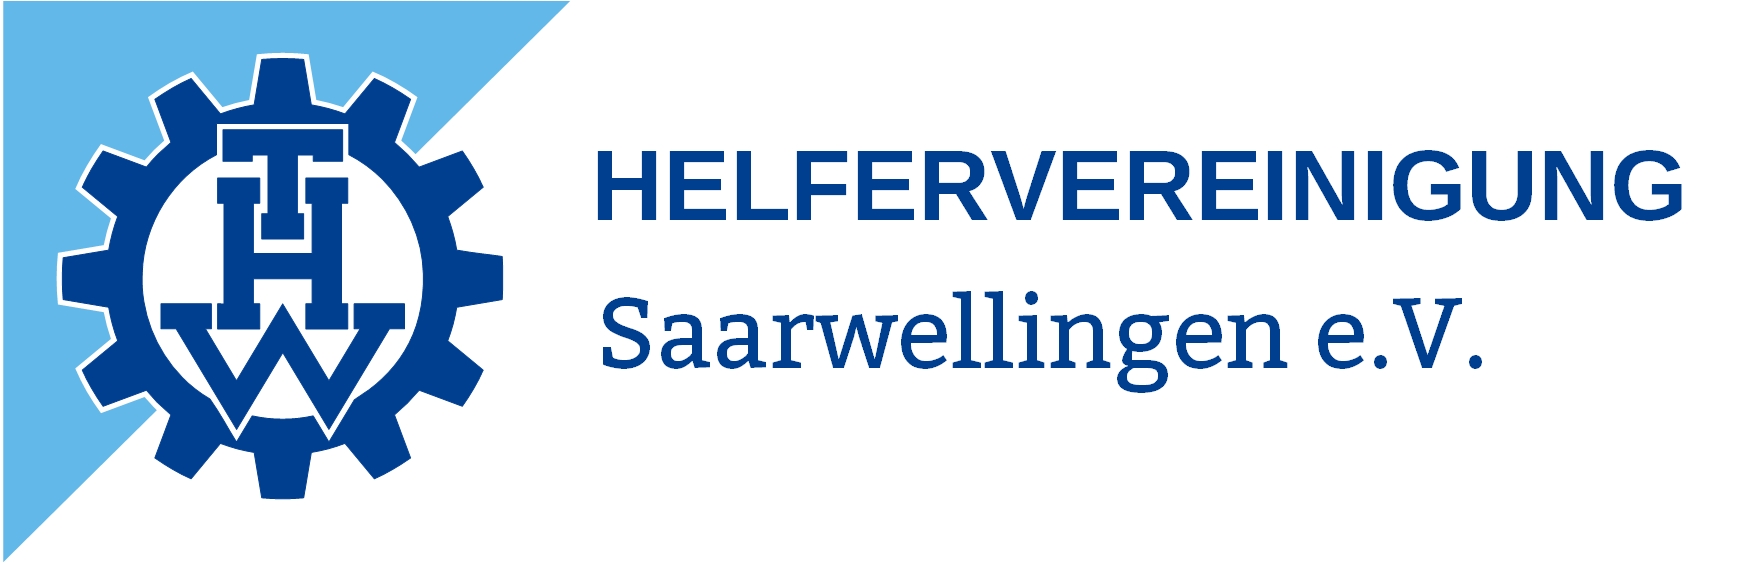 Profilbild des Vereins THW-Helfervereinigung Saarwellingen e.V.